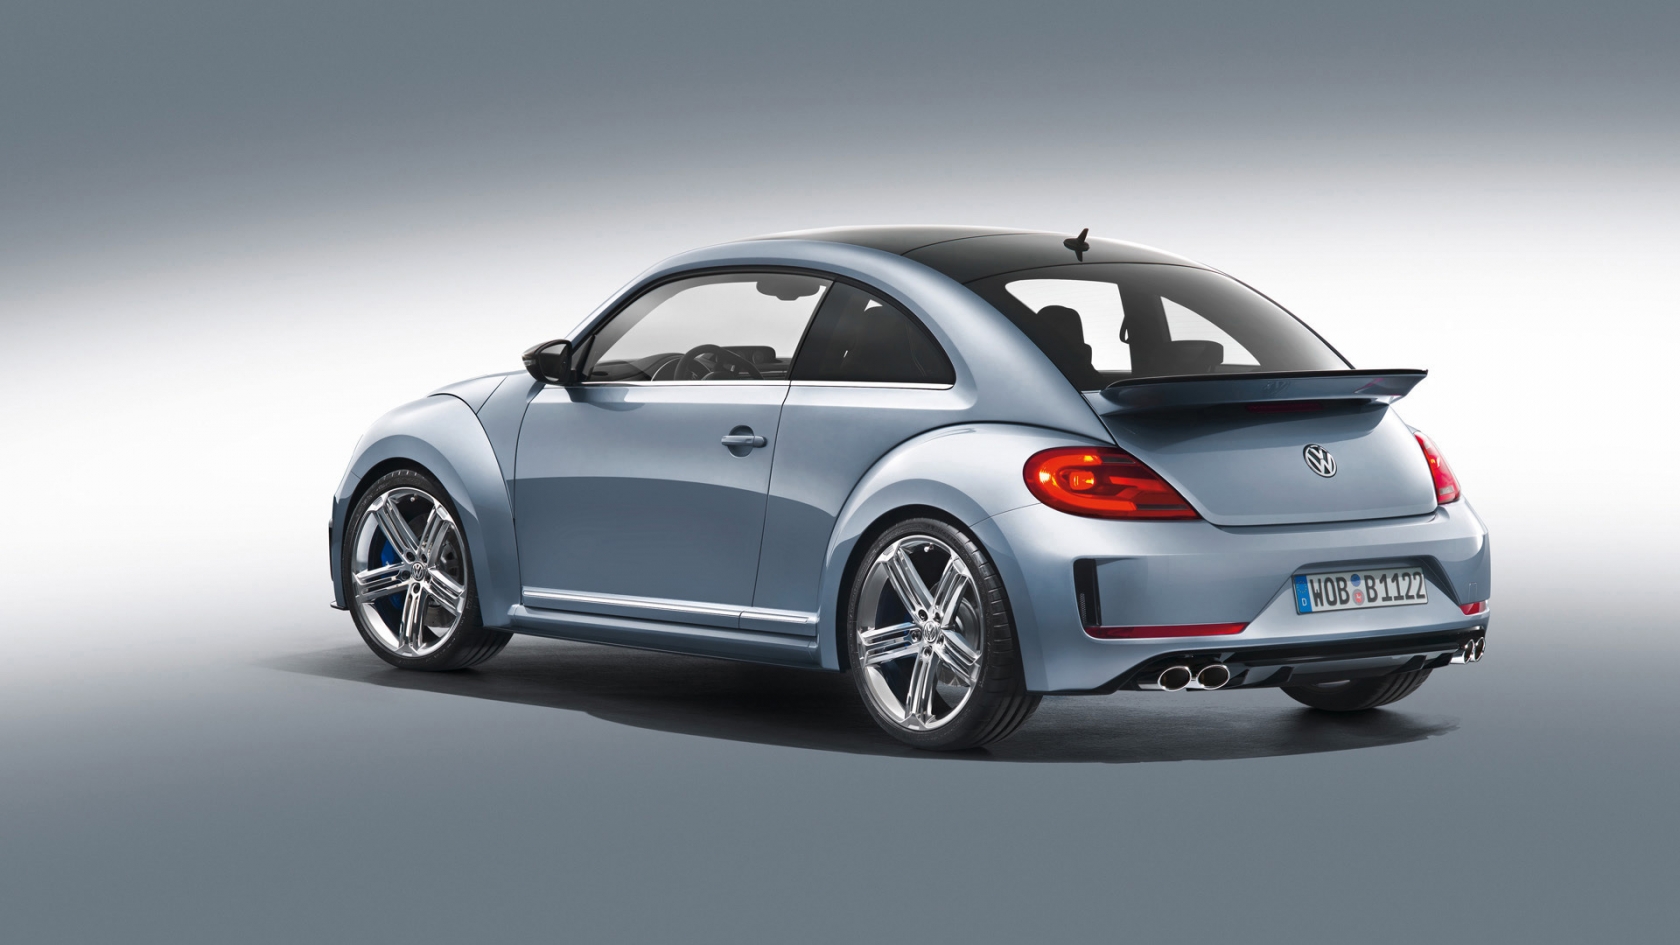 2011 Volkswagen Beetle R Concept Studio for 1680 x 945 HDTV resolution